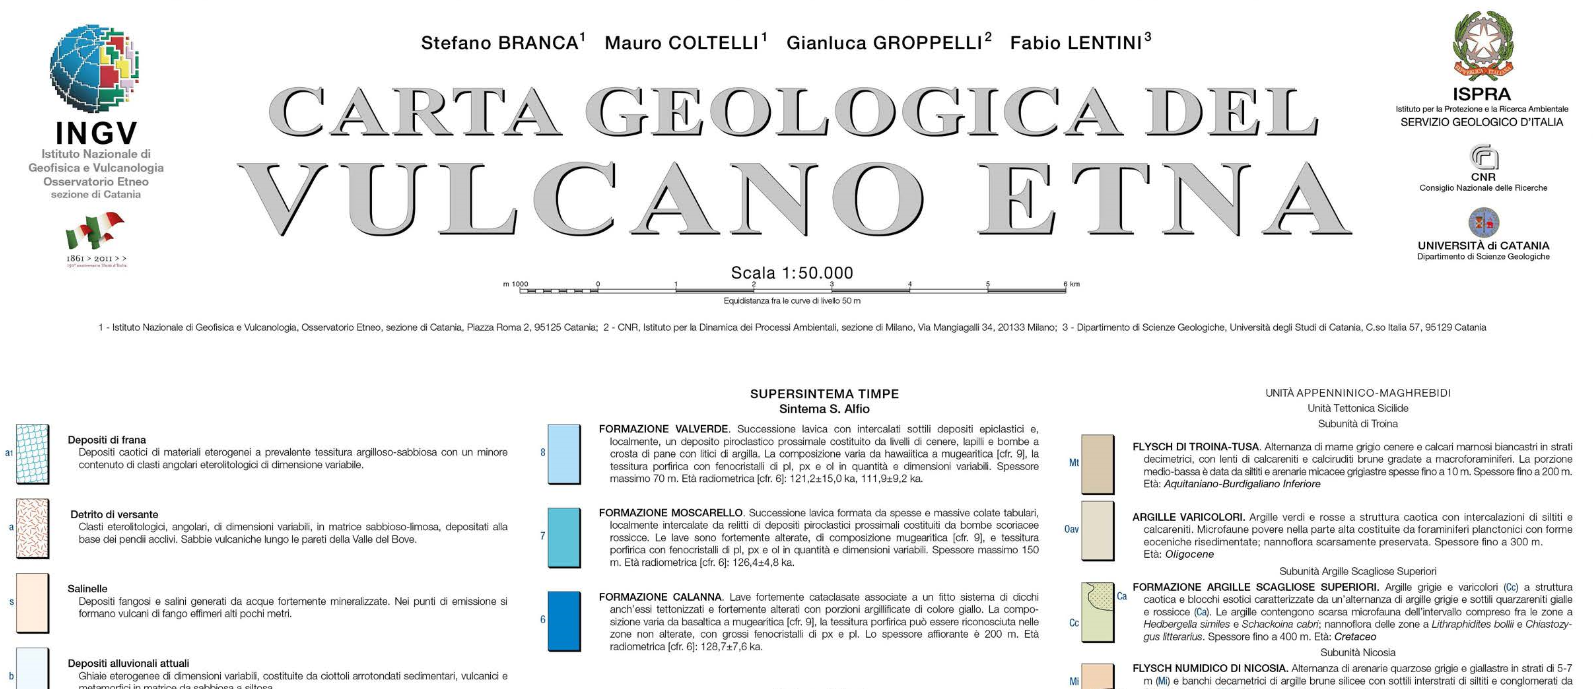 Pubblicate le memorie descrittive della Carta Geologica dell’Etna.